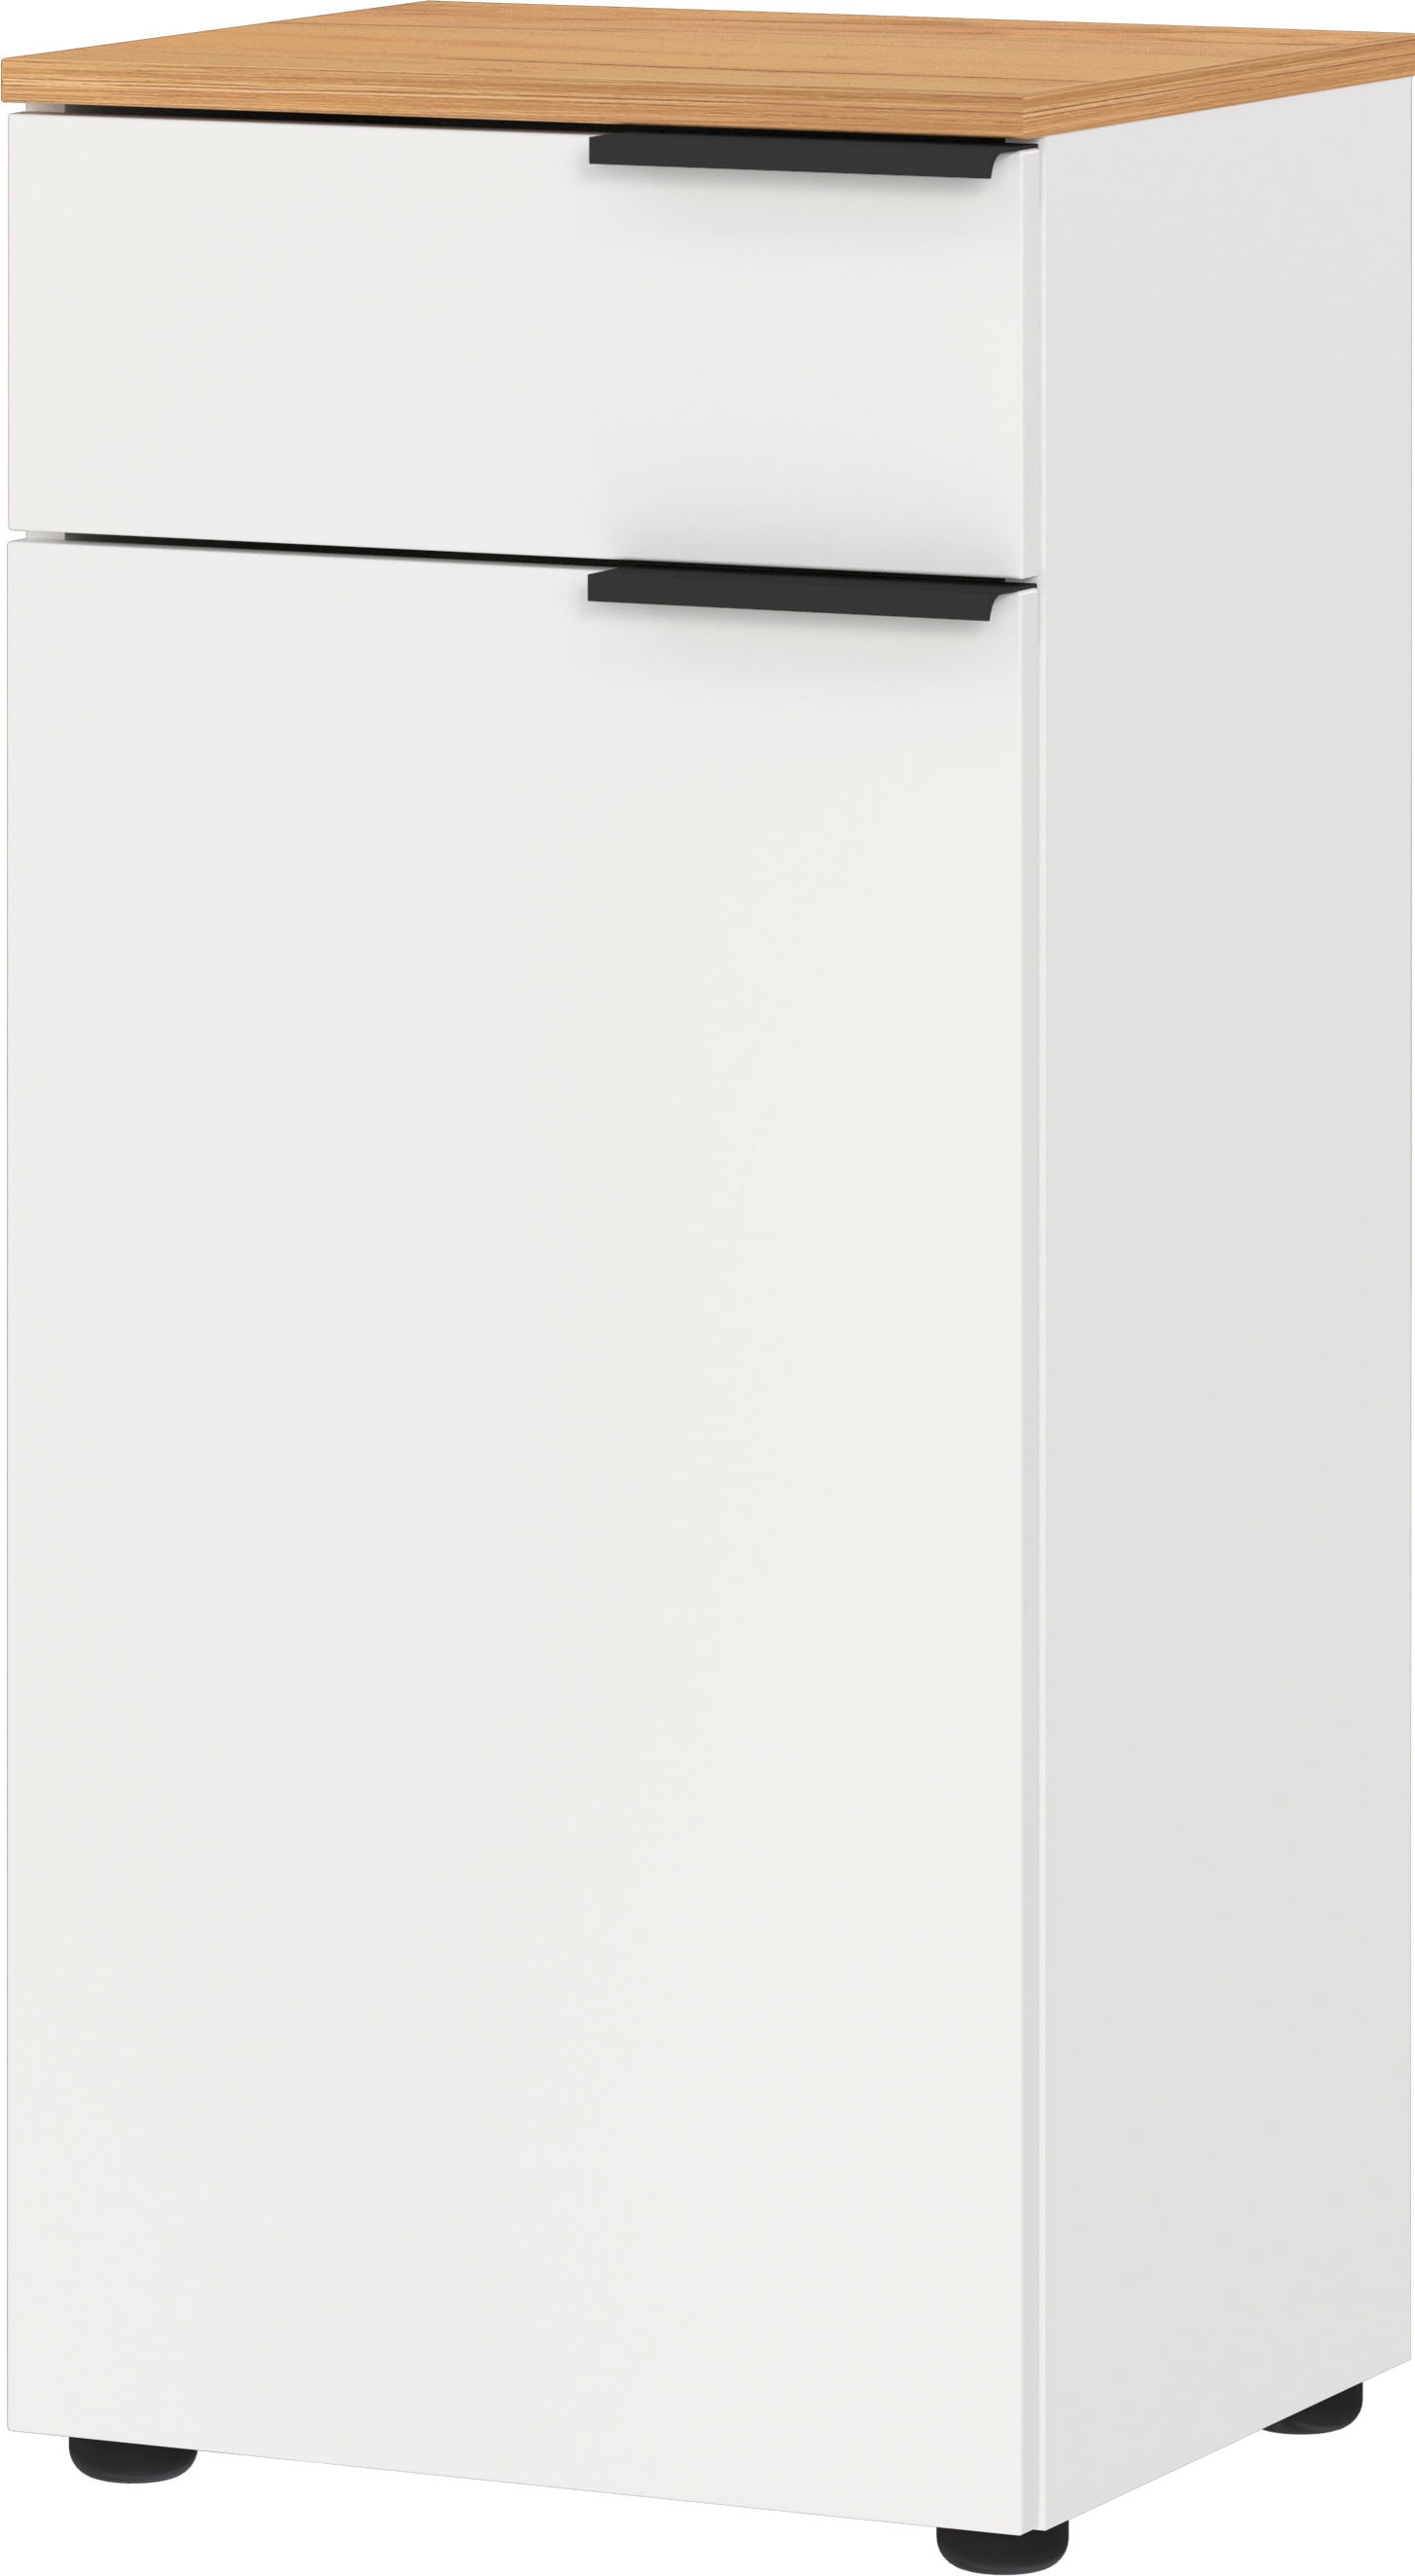 andas Unterschrank »Majtum Schublade und Tür mit Soft-Close-Funktion«, Höhe 85 cm, widerstandsfähige Oberfläche, Made in Germany